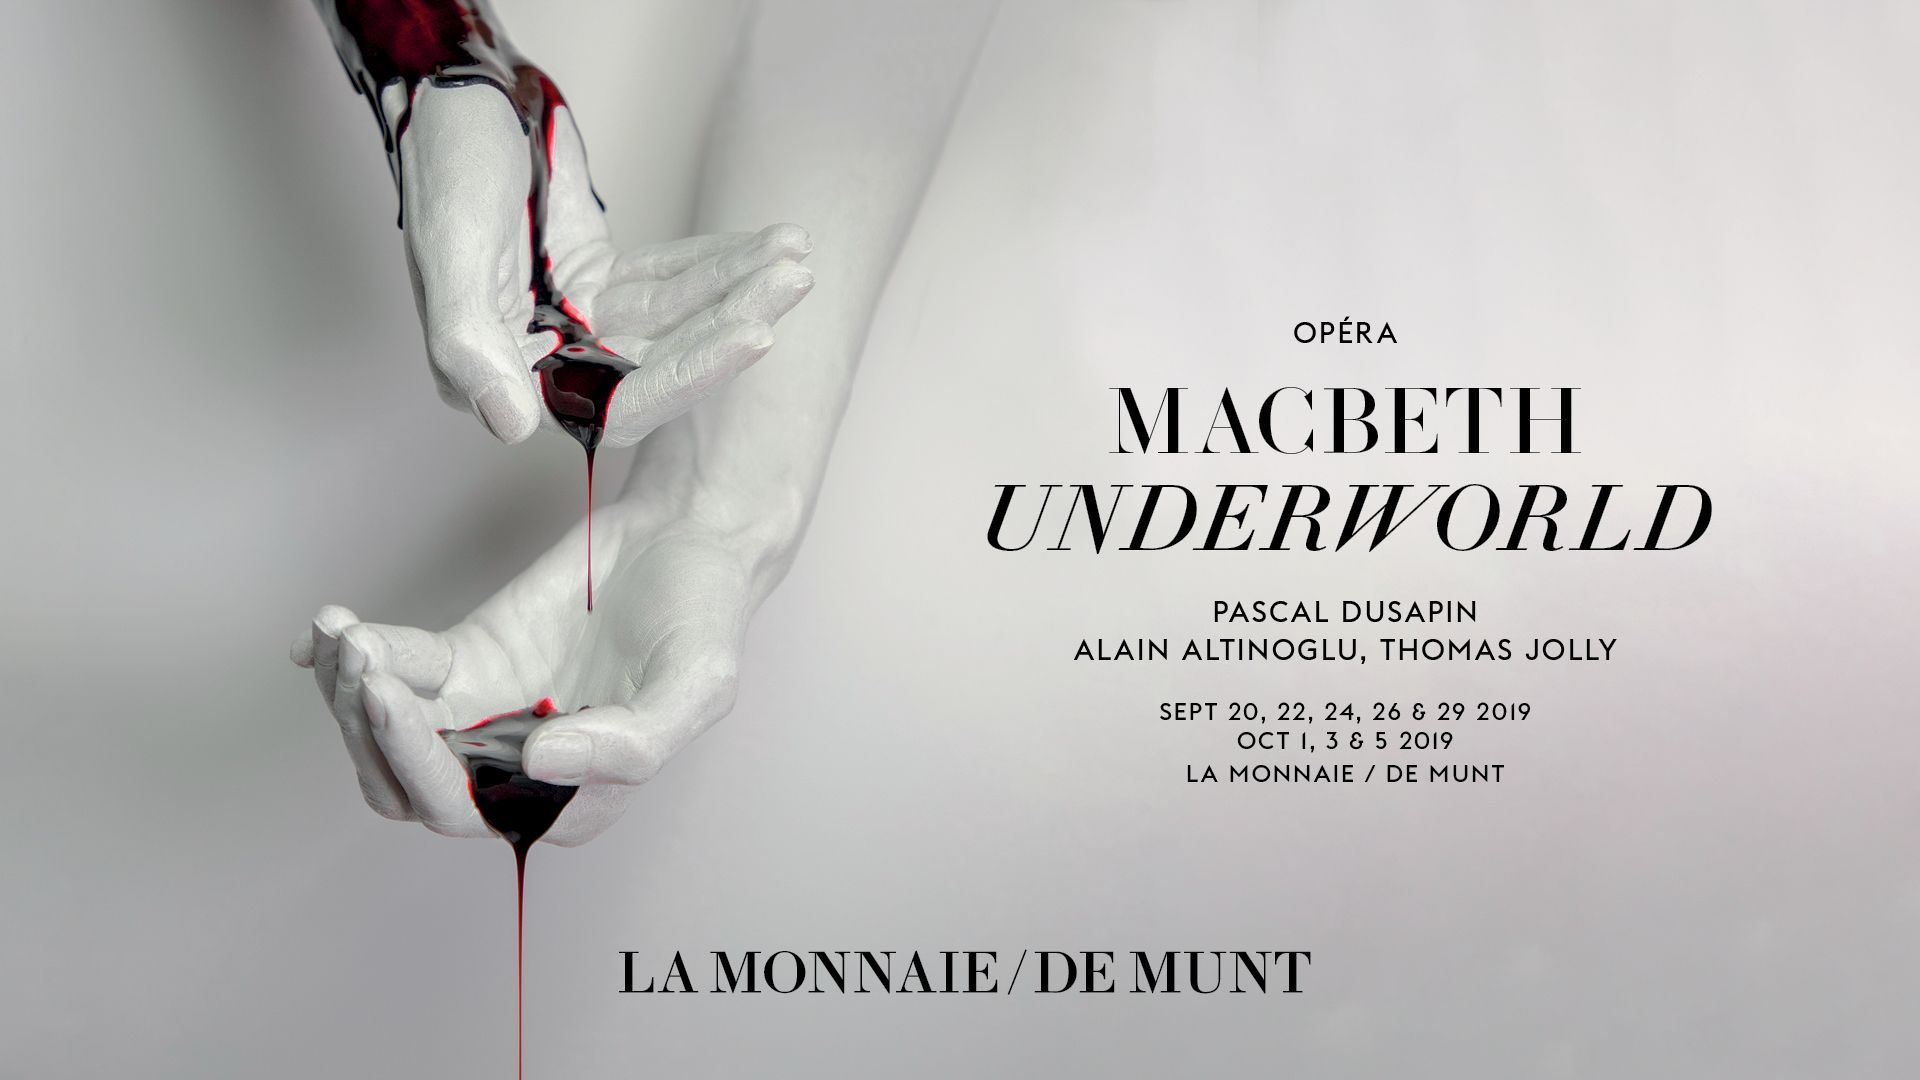 Musiq3 soutient "Macbeth Underworl", le nouvel opéra de Pascal Dusapin à La Monnaie